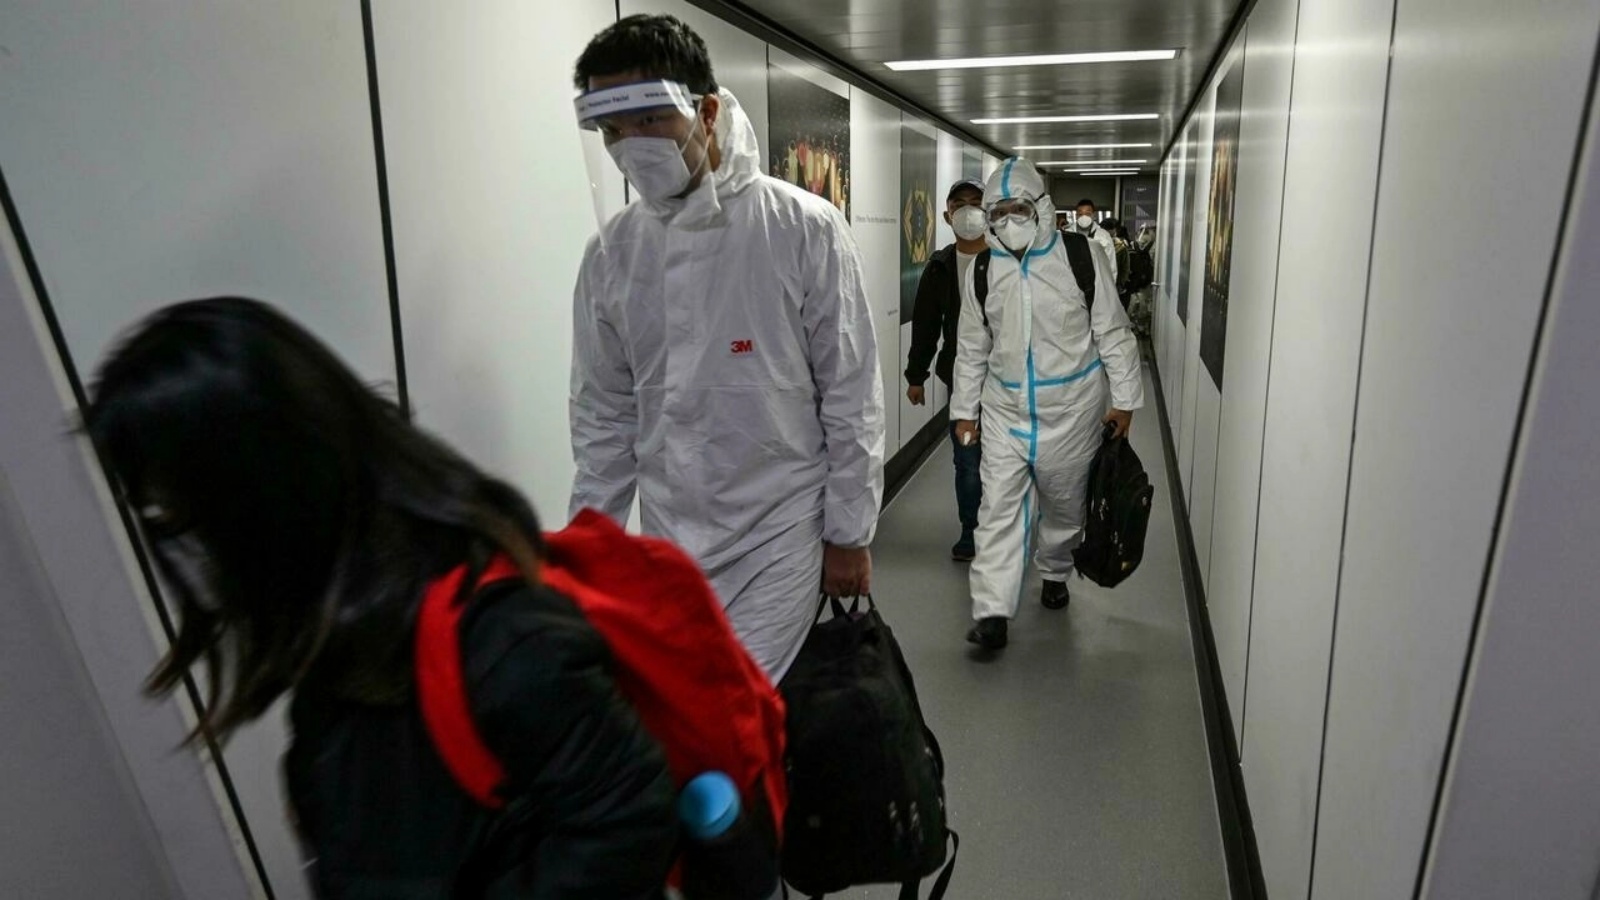 ركاب، بعضهم يرتدي معدات الحماية الشخصية الكاملة، ينزلون من طائرتهم في مطار بودونغ الدولي في شنغهاي في 18 يناير 2022